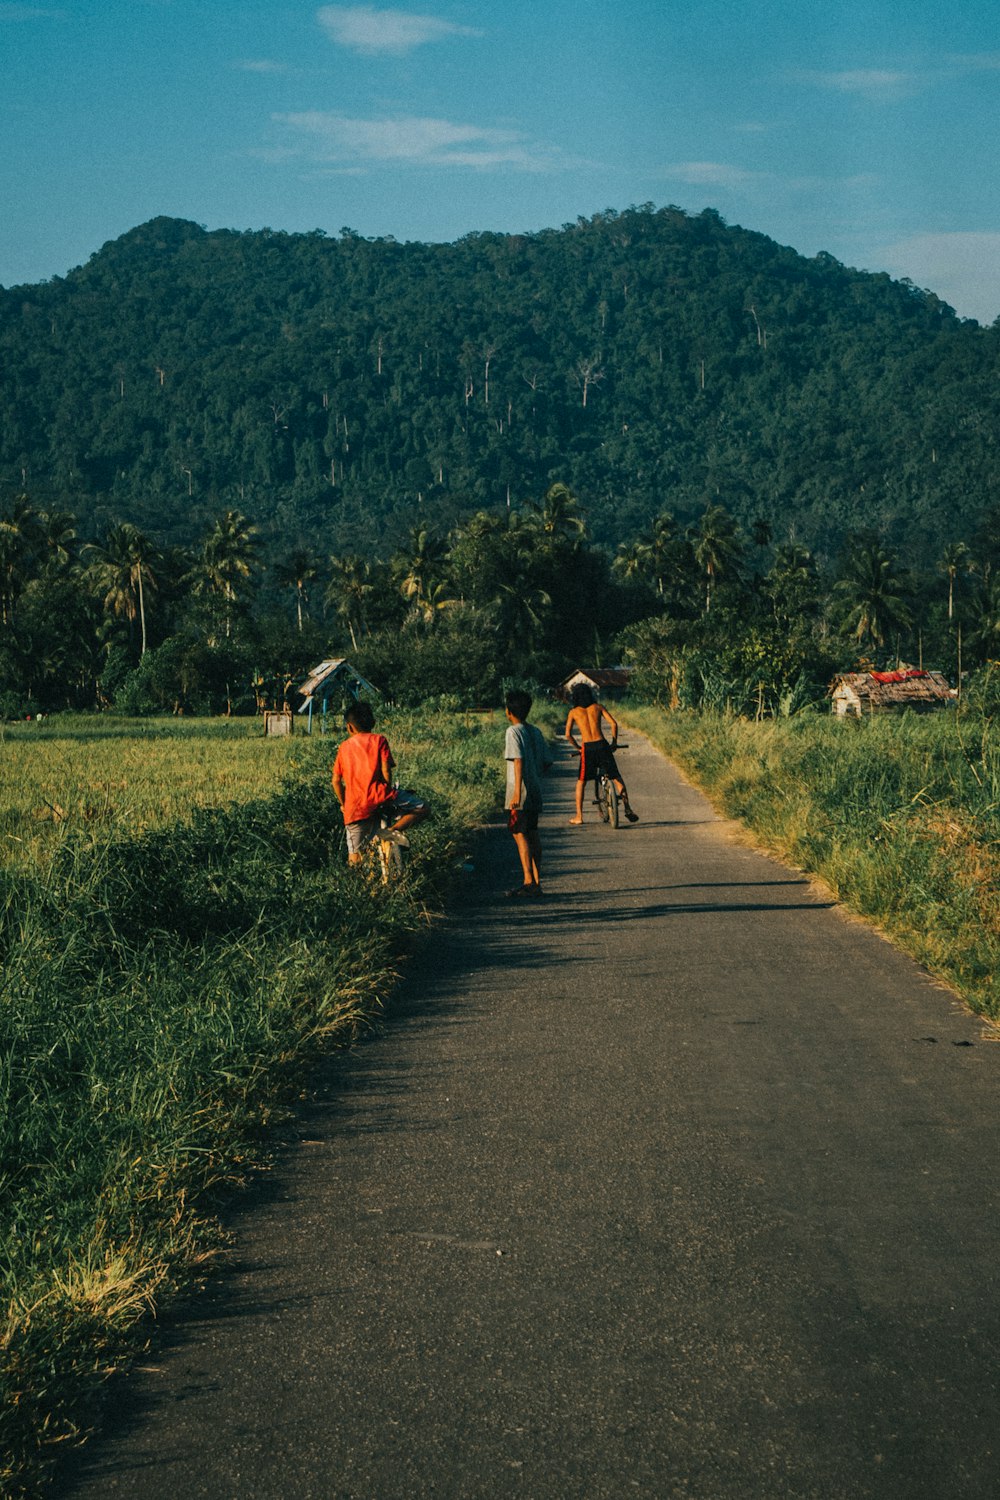 people walking on road during daytime